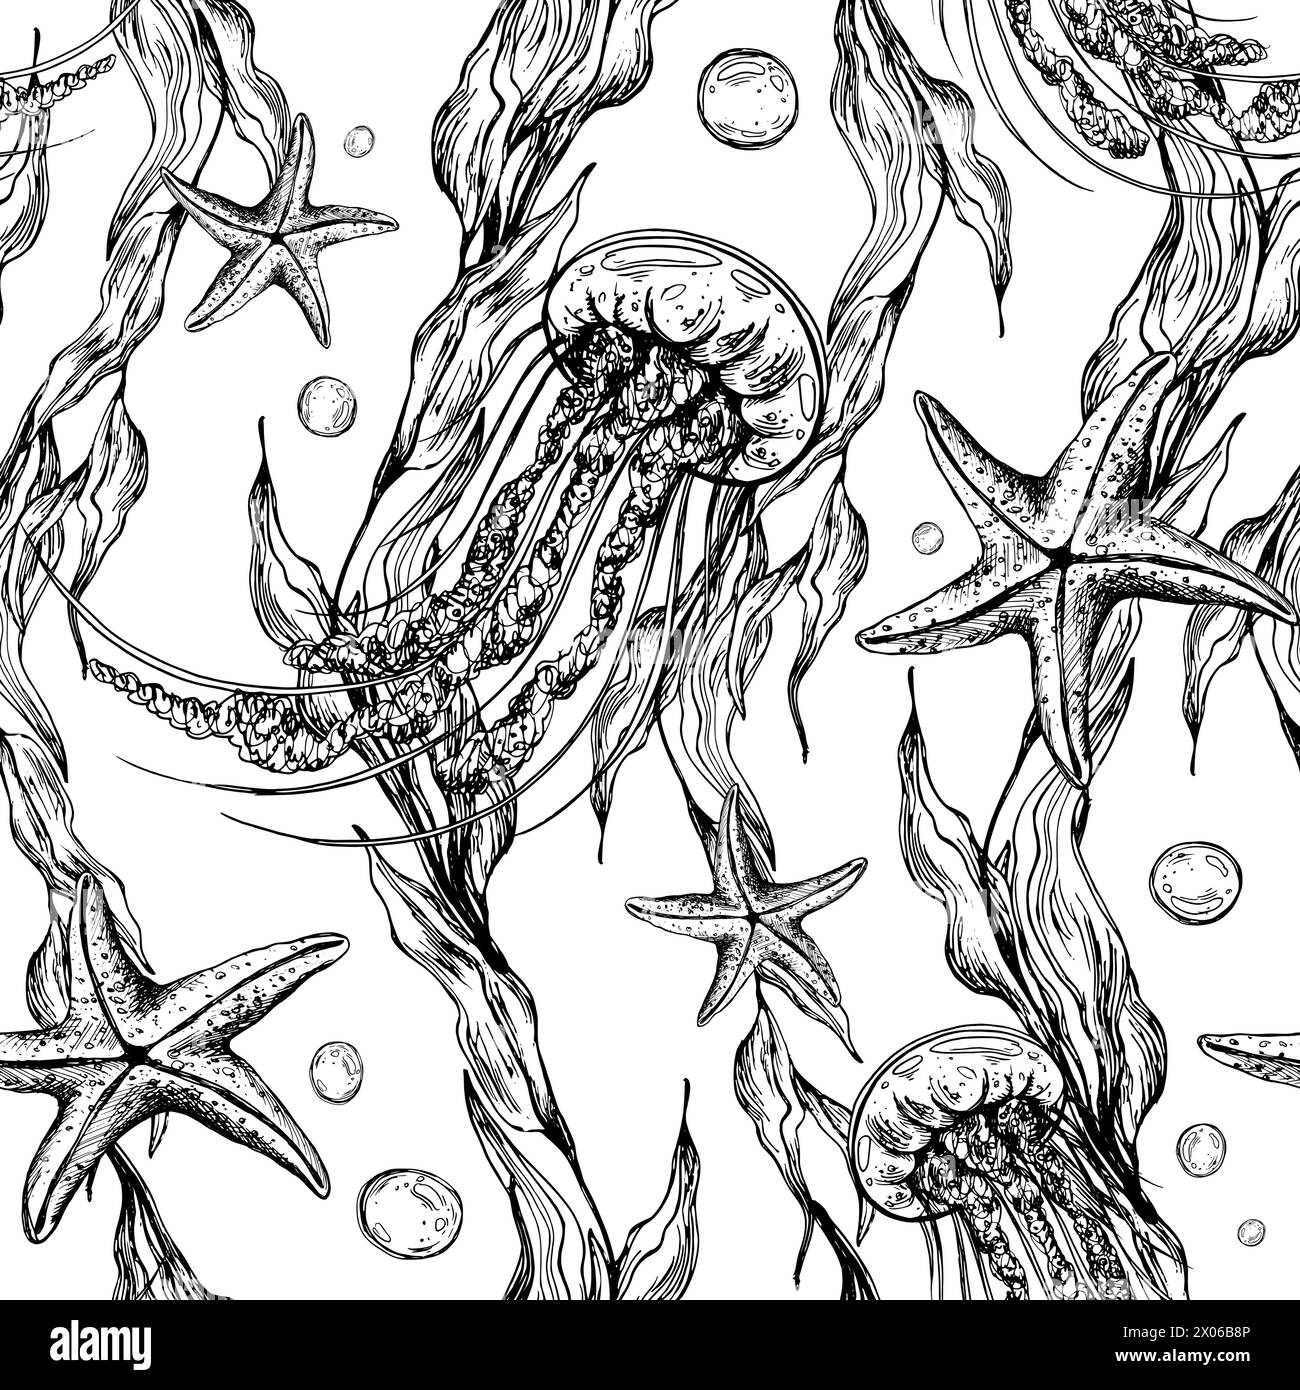 Unterwasserwelt-Clipart mit Meerestieren Quallen, Seesternen, Blasen und Algen. Grafische Abbildung, handgezeichnet mit schwarzer Tinte. Nahtloses Muster EPS Stock Vektor